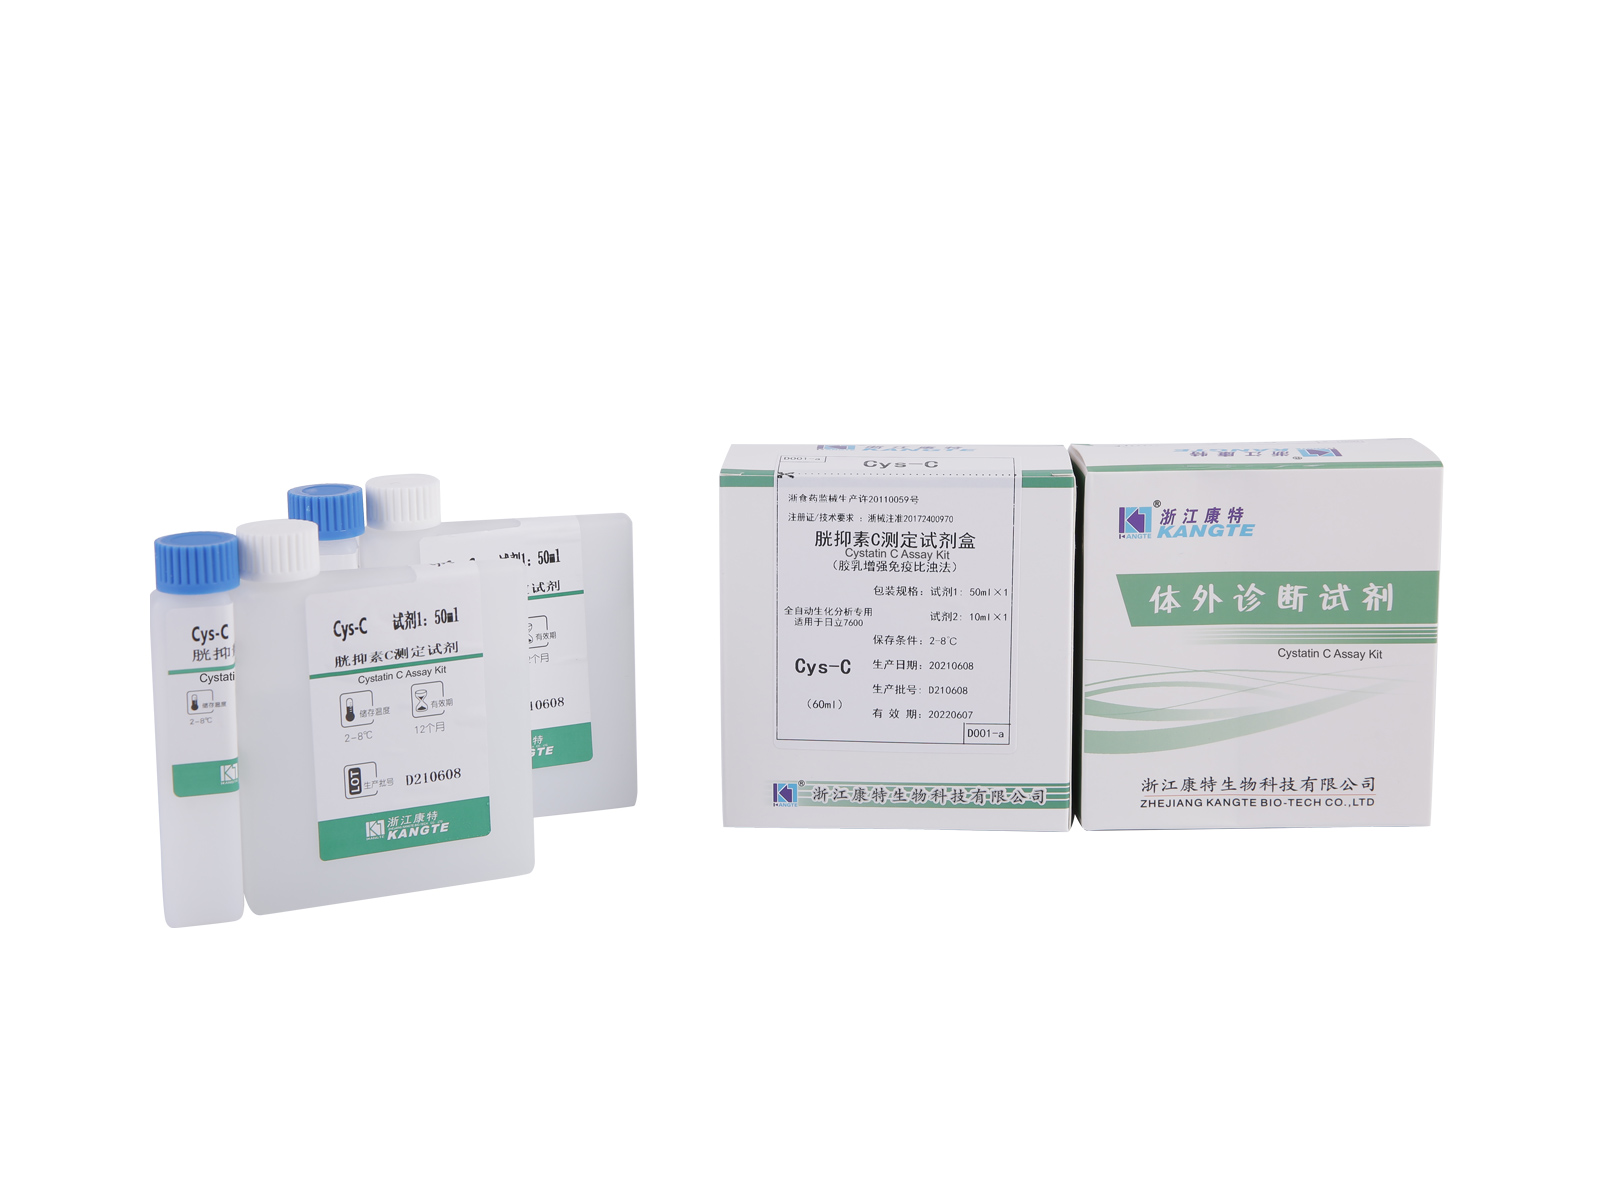 【Cys-C】Komplet za analizu cistatina C (imunoturbidimetrijska metoda pojačana lateksom)